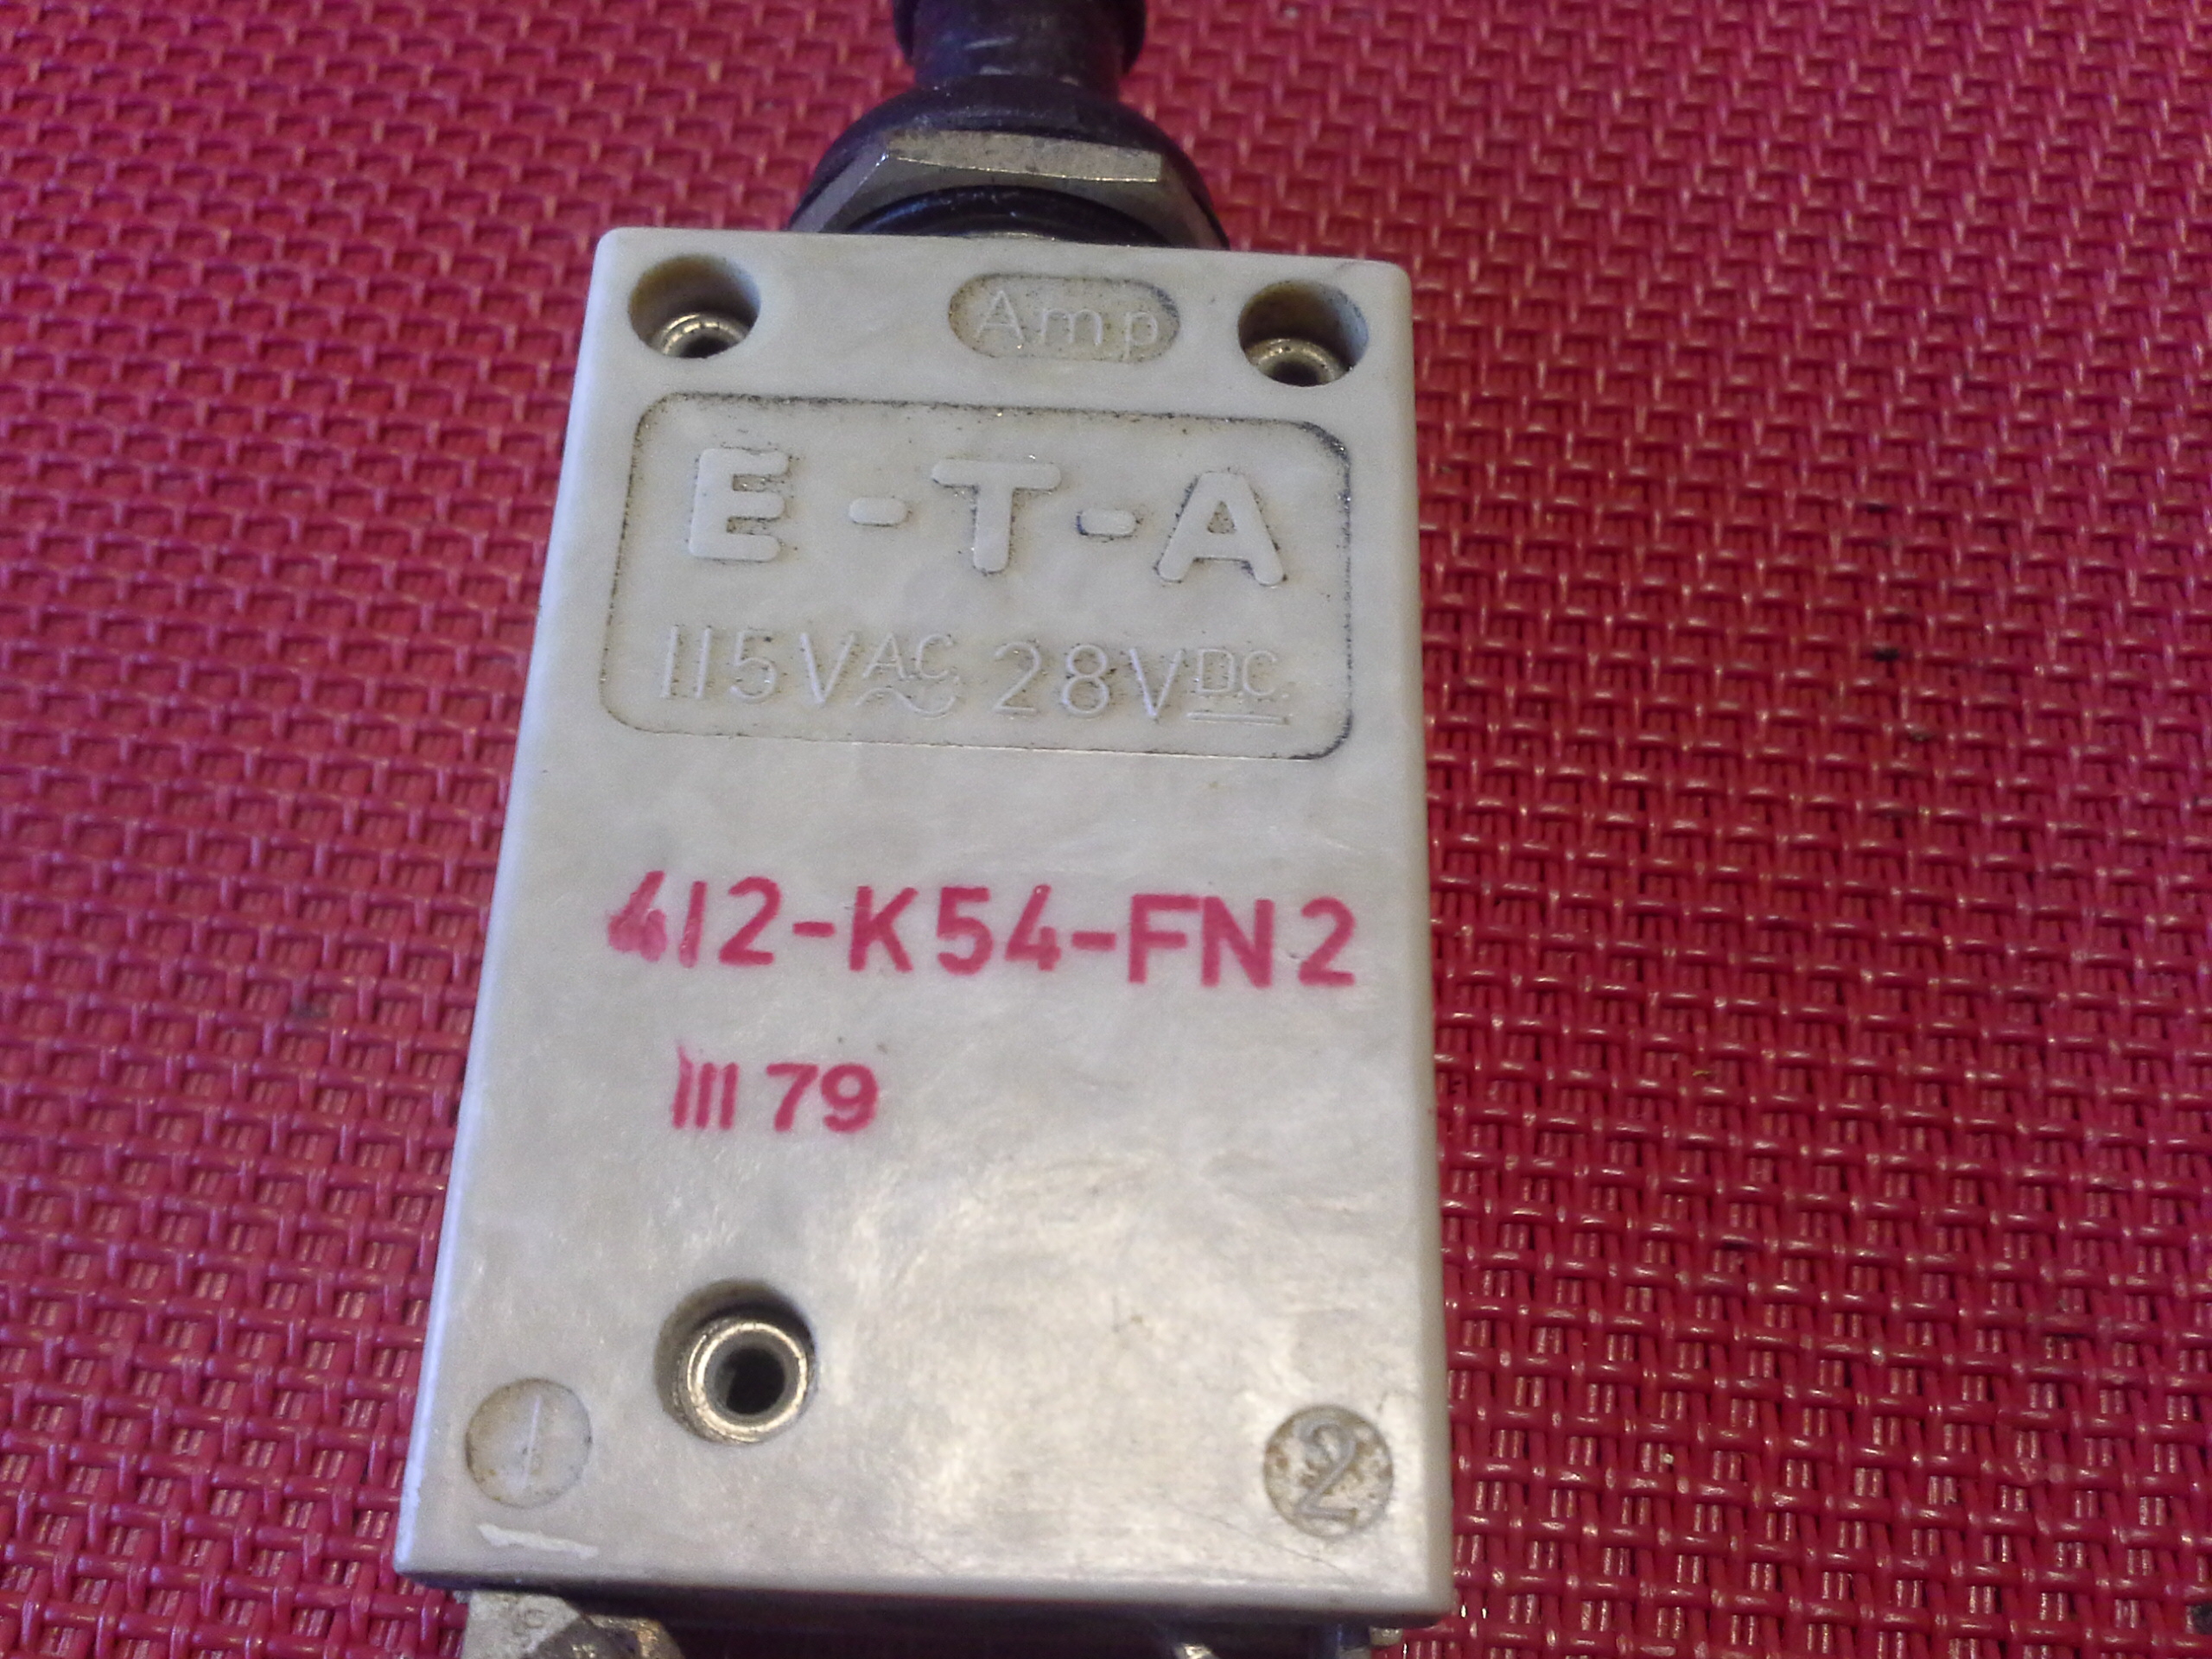 E-T-A Schutzschalter 412-K54-FN2, 115 V, 28 V, 6 A